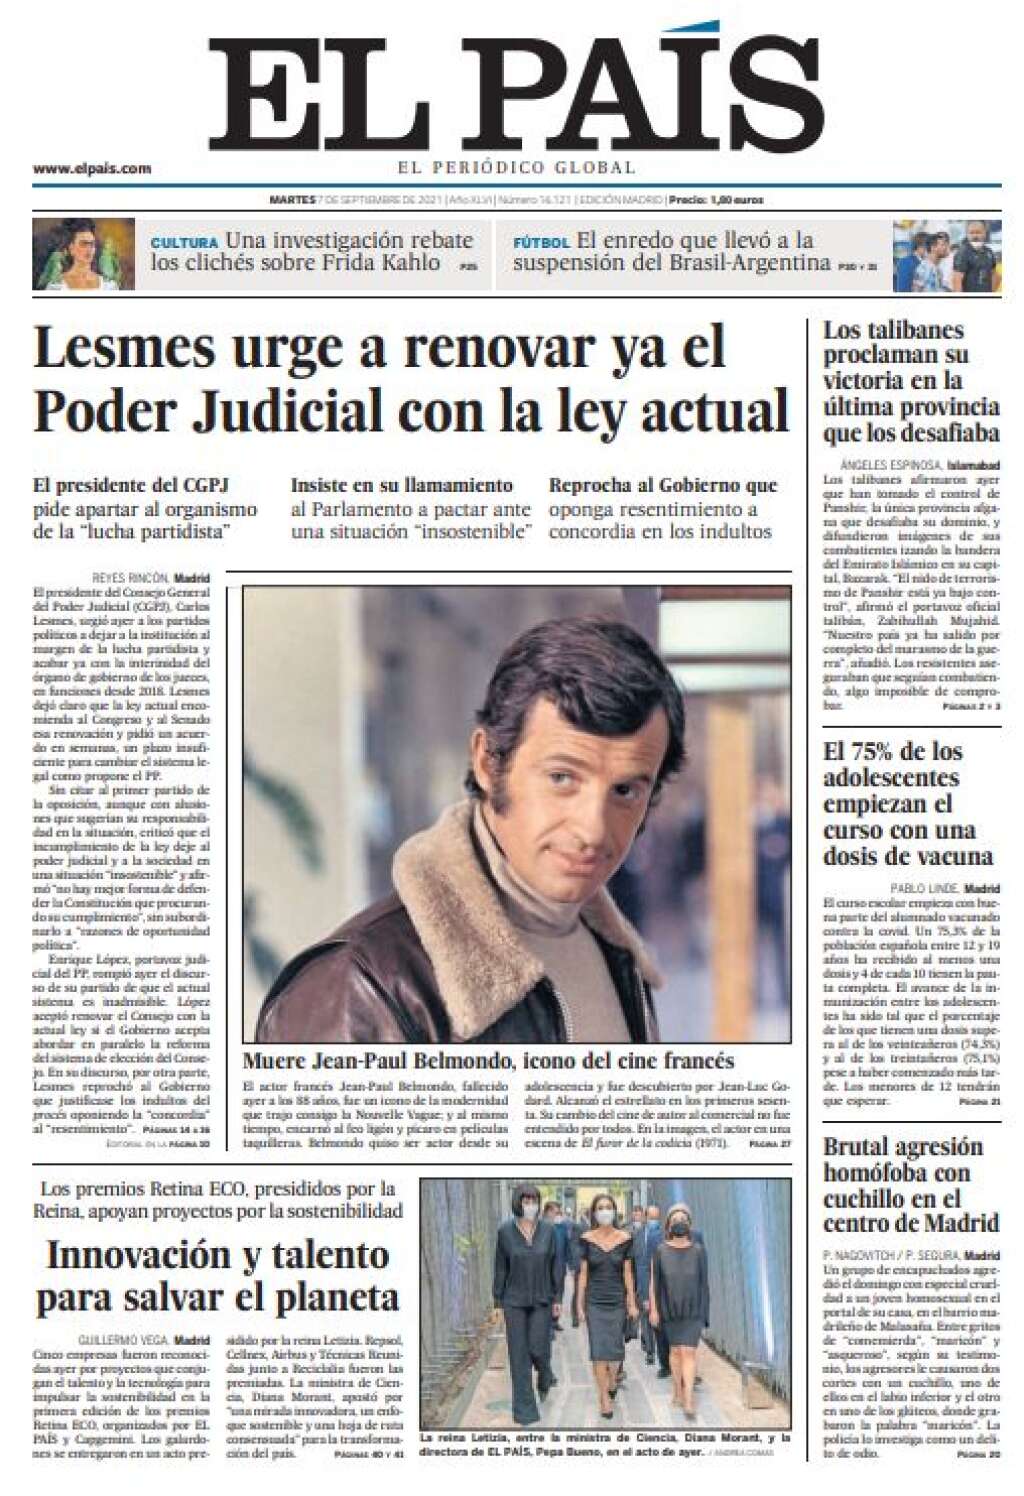 El Pais - Espagne - Le journal espagnol place "l'icone du cinéma français" au centre de sa Une.